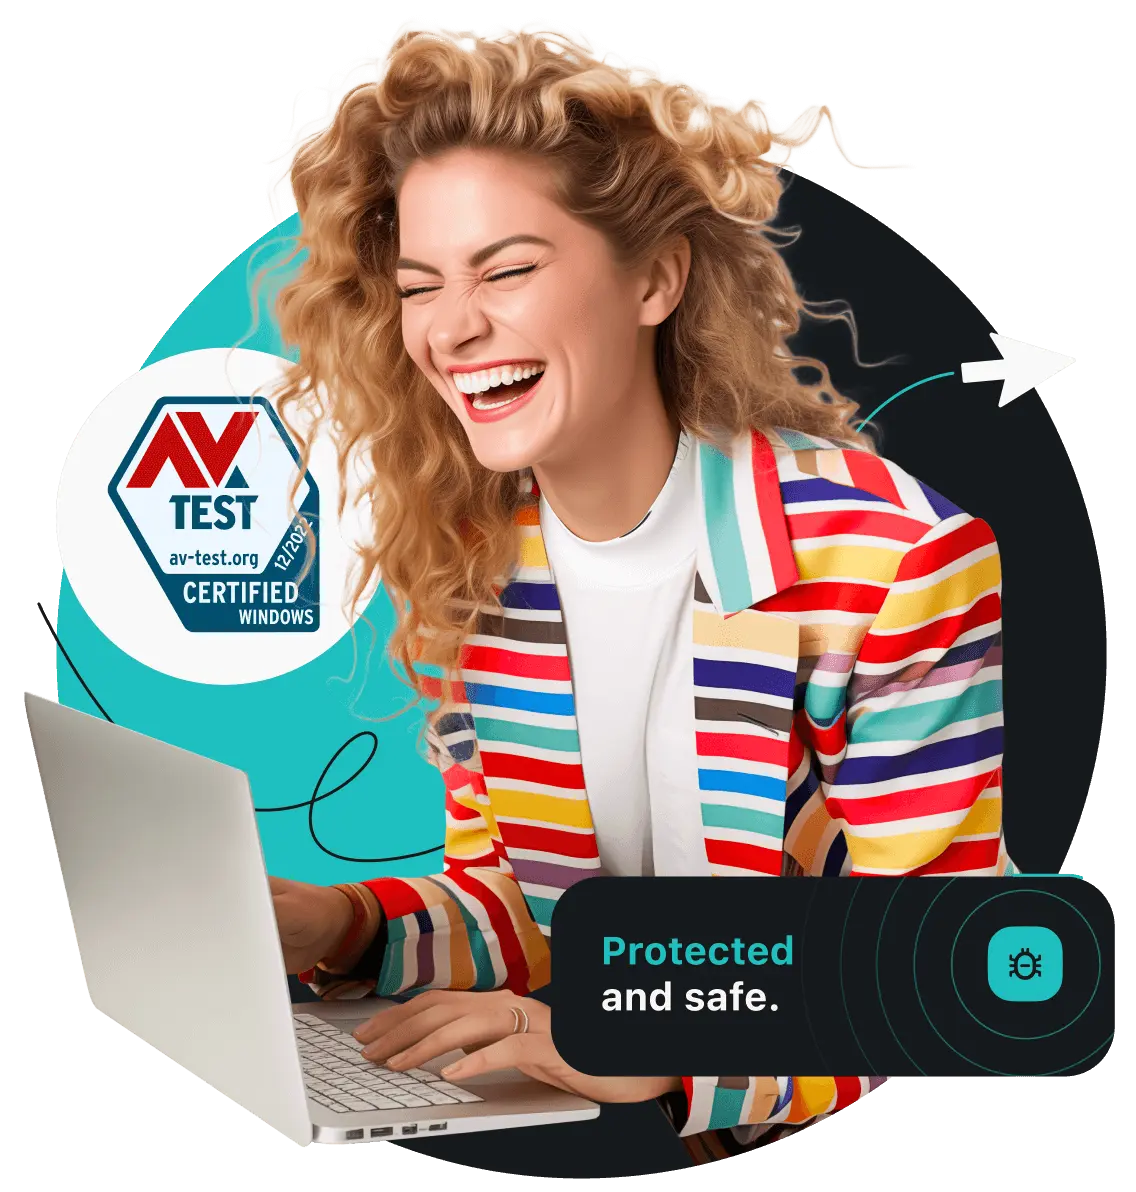 Una donna sorridente con una giacca a righe colorate che guarda il suo computer portatile. Alla sua sinistra è presente il badge per la certificazione AV.